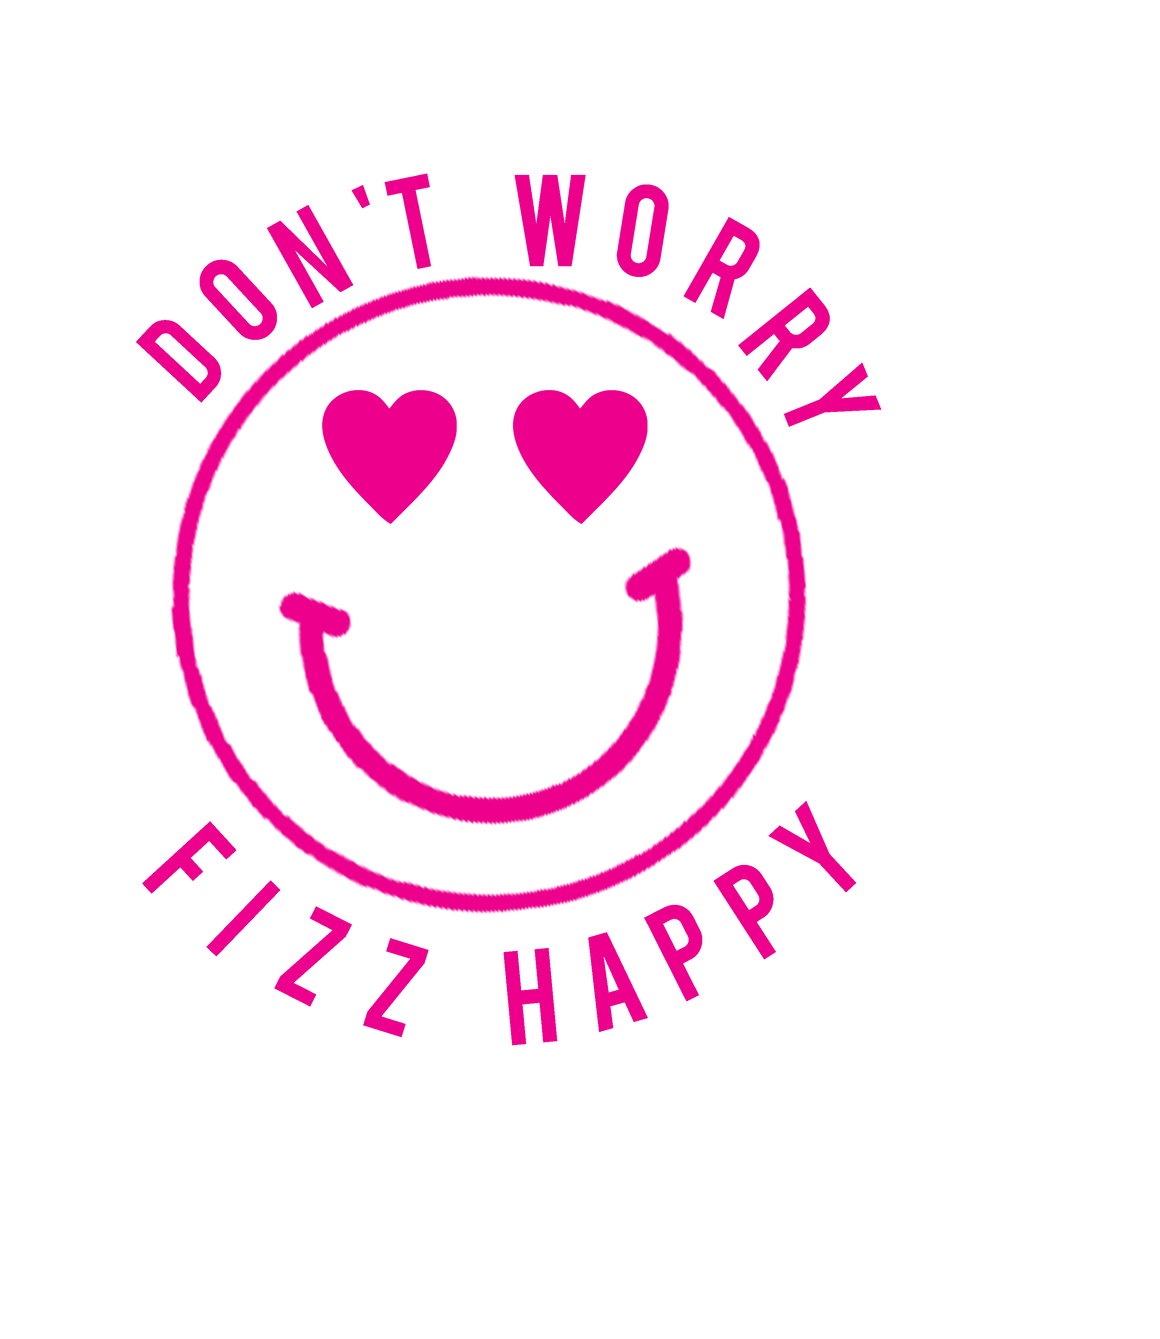 Don't Worry Fizz Happy sticker (single)